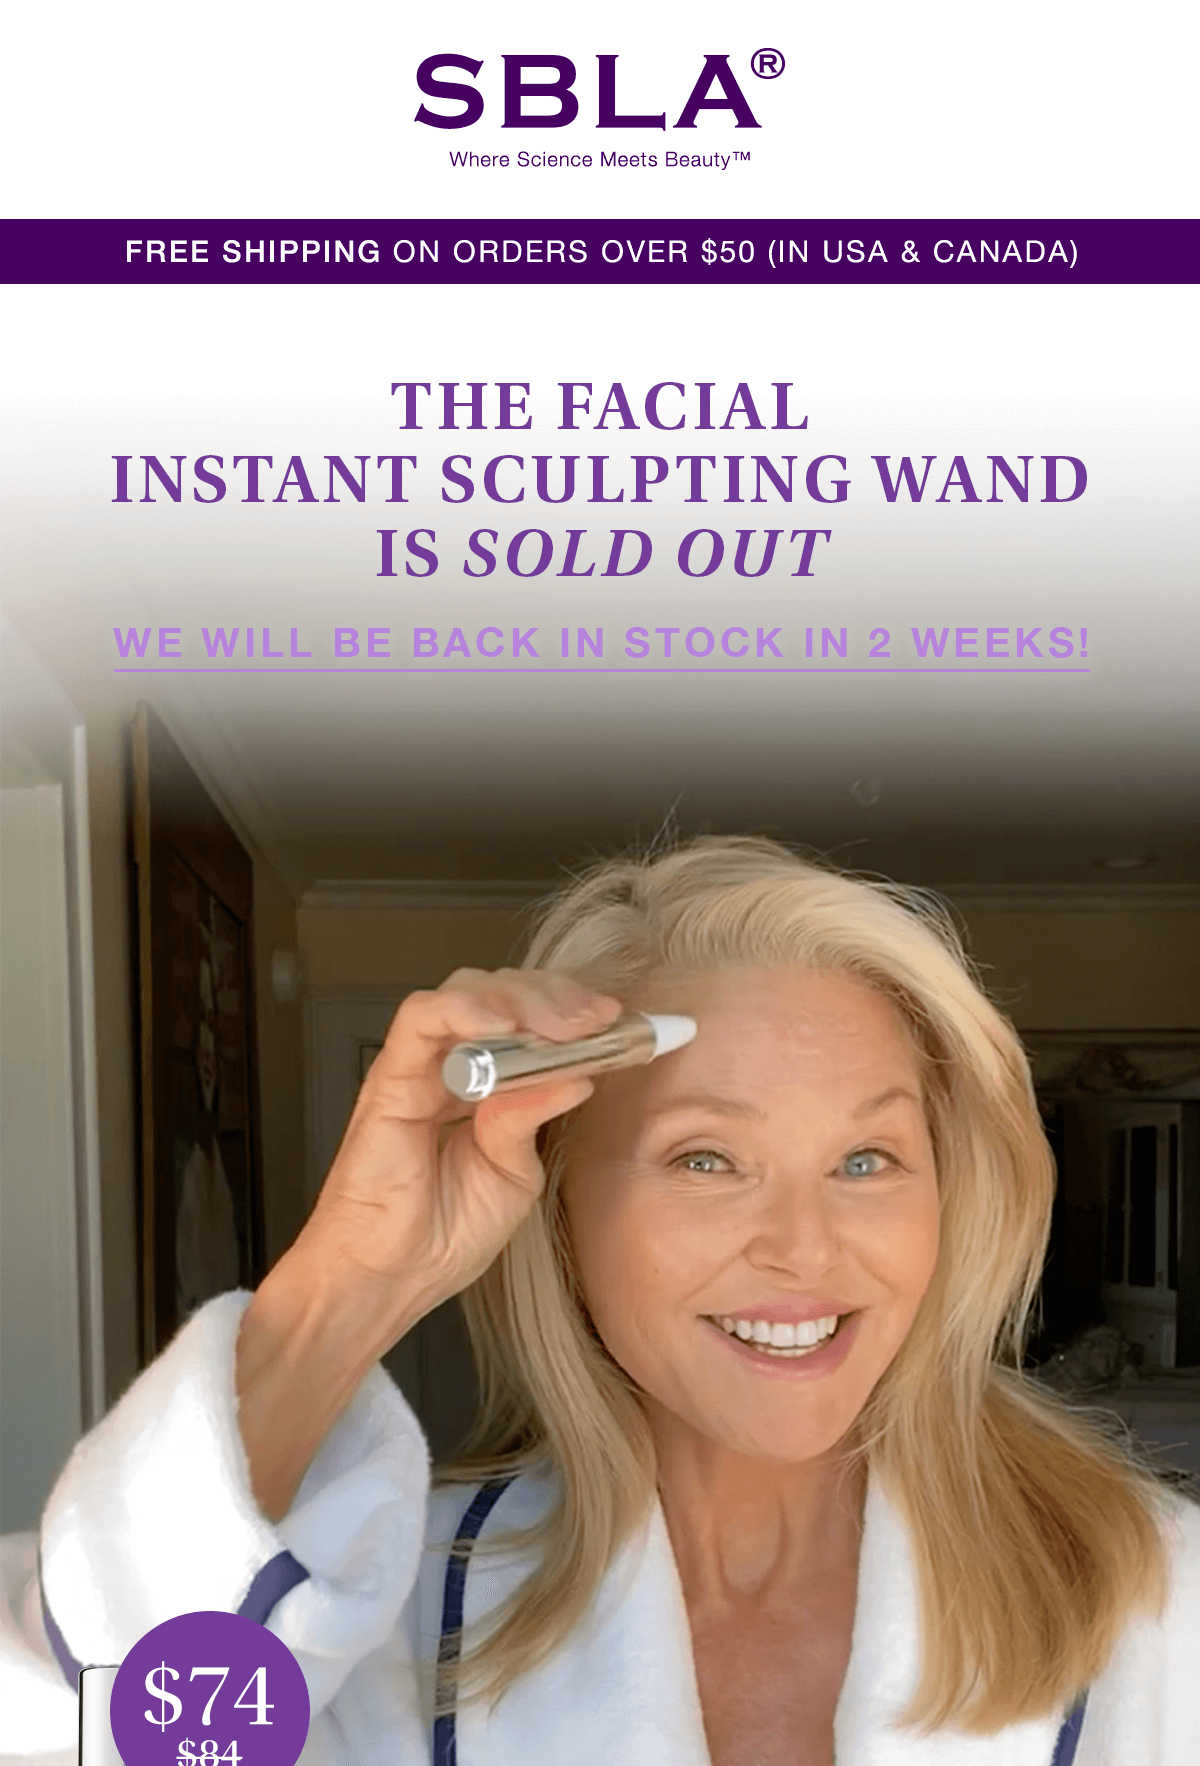 SPENCER BARNES LA: $10 off The Facial Instant Sculpting Wand